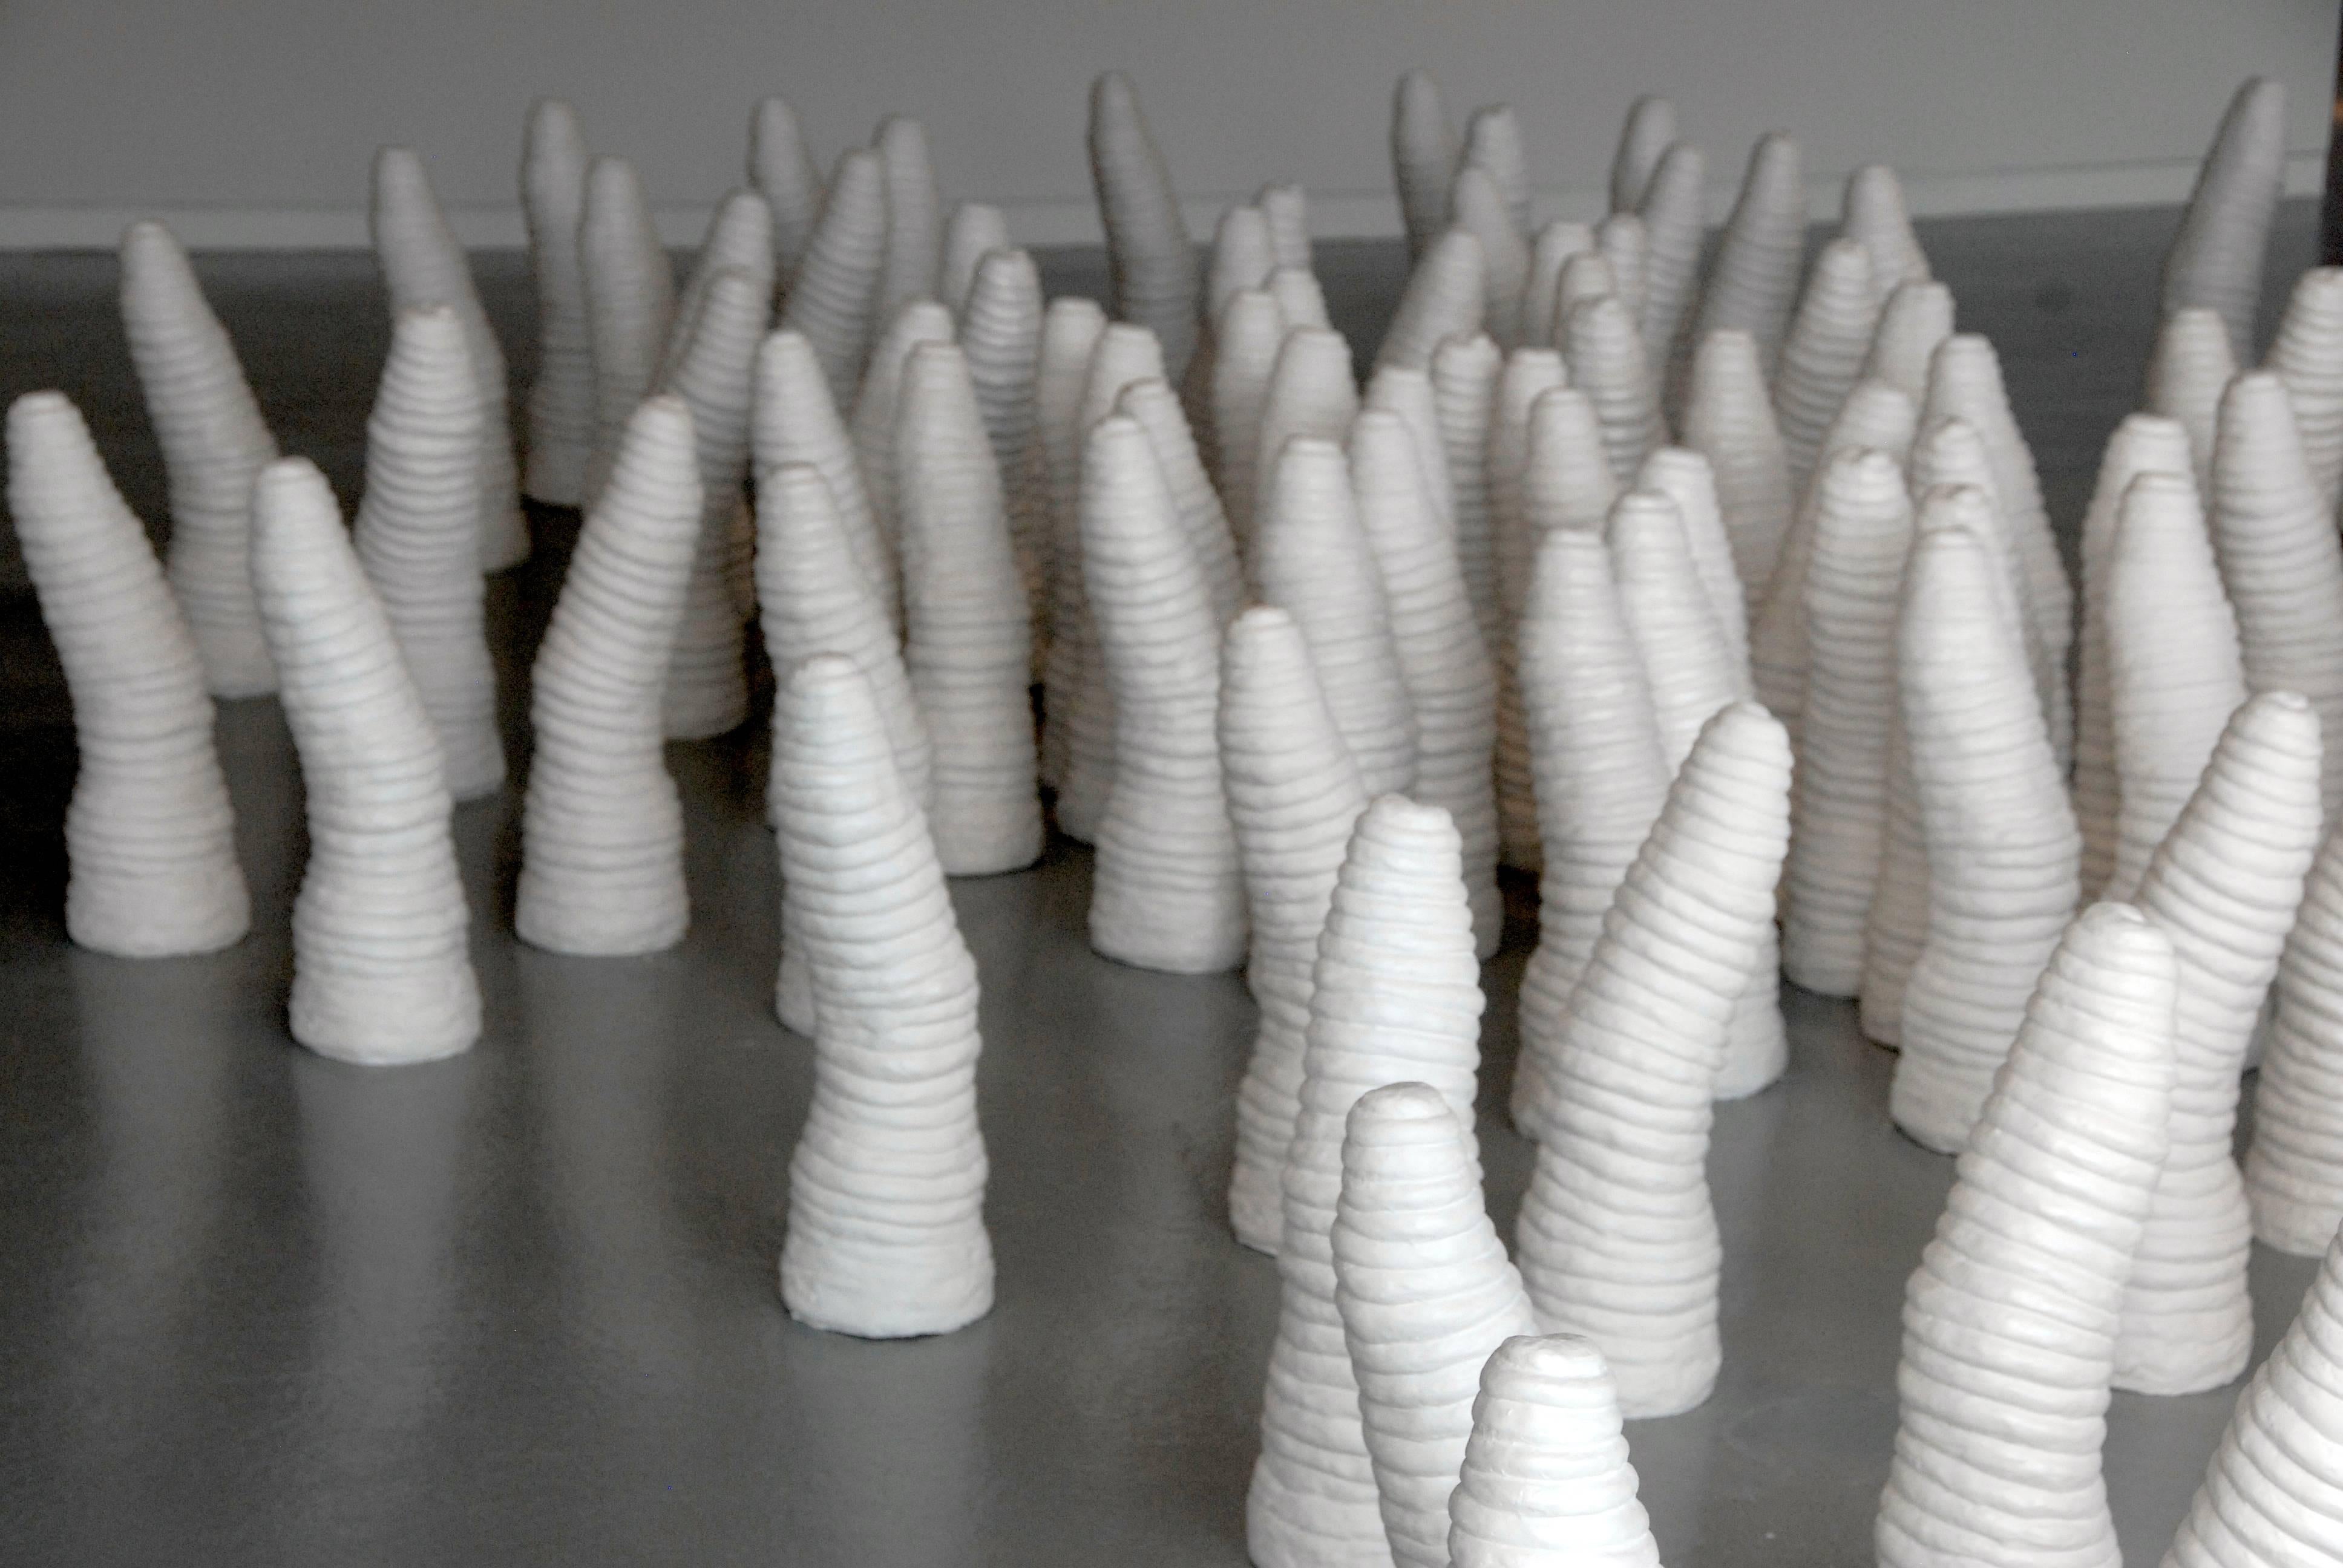 In Sylvia Schwartz' Strukturen werden Silikonformen aus natürlichen und handgefertigten Formen gegossen, darunter Tonspiralen, Muster aus Vulkangestein, Seegras und ihre eigenen Fingerabdrücke.

Die menschliche Spur wird durch die Wiederholung von